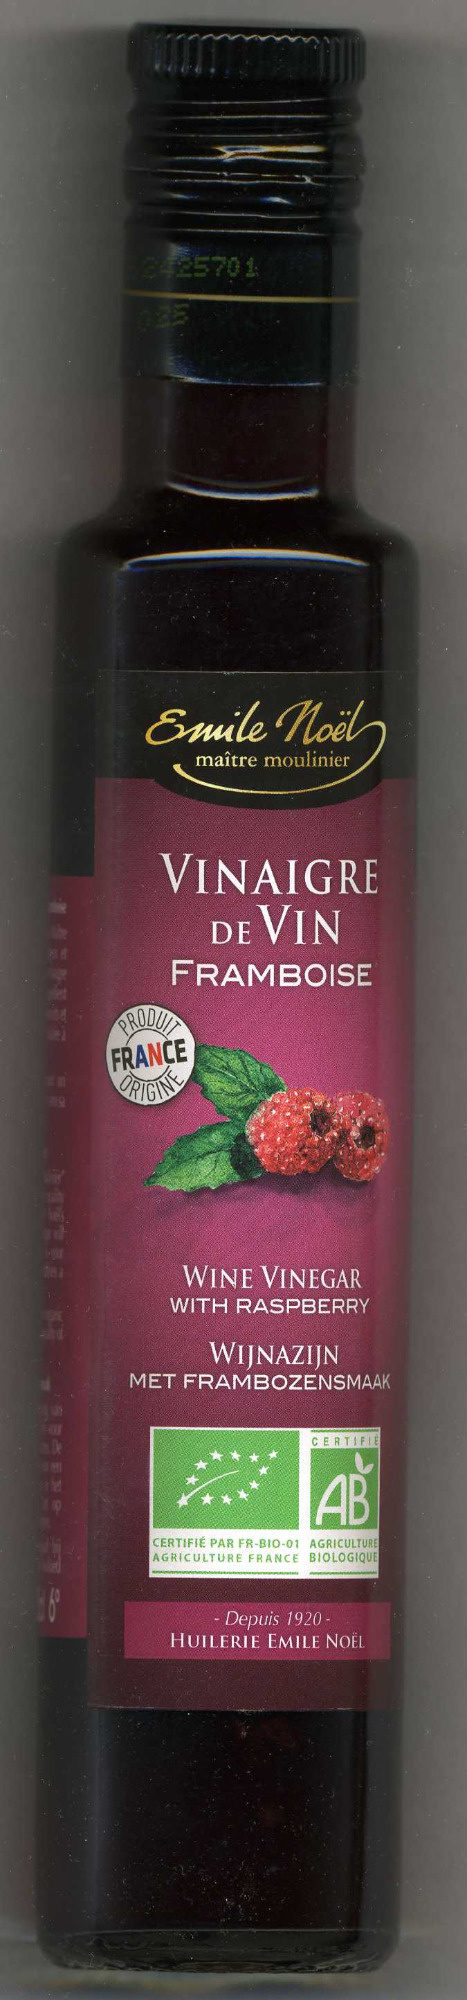 VINAIGRE VIN FRAMBOISE - Produit